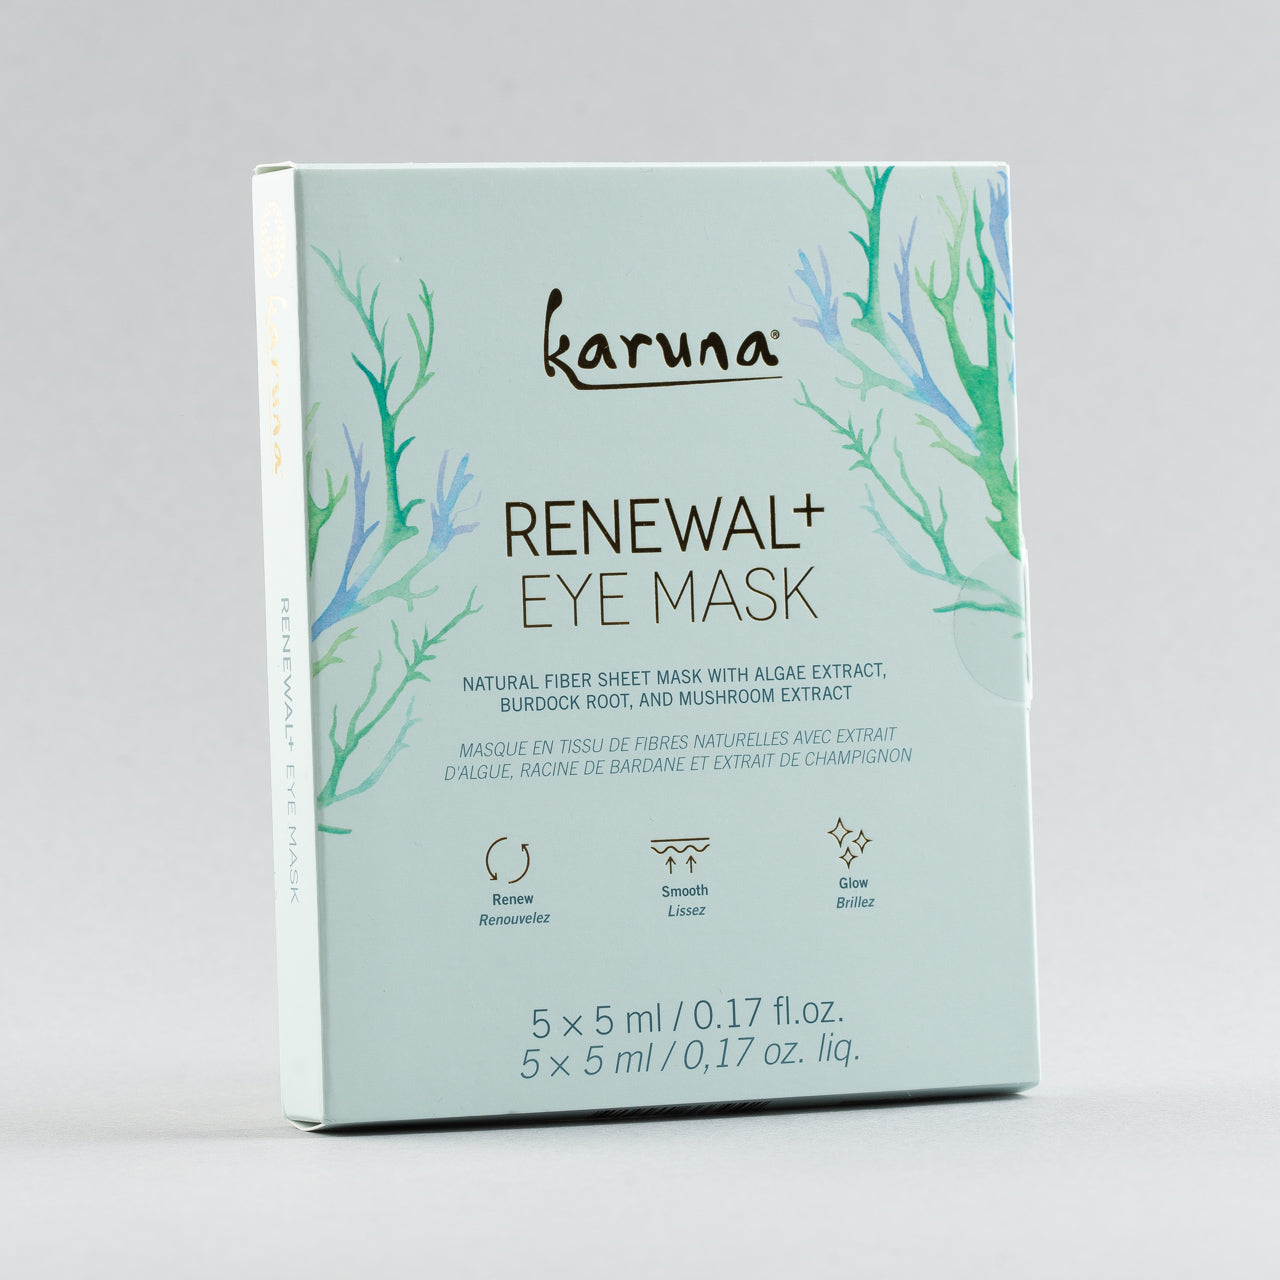 Karuna Renewal Eye Mask